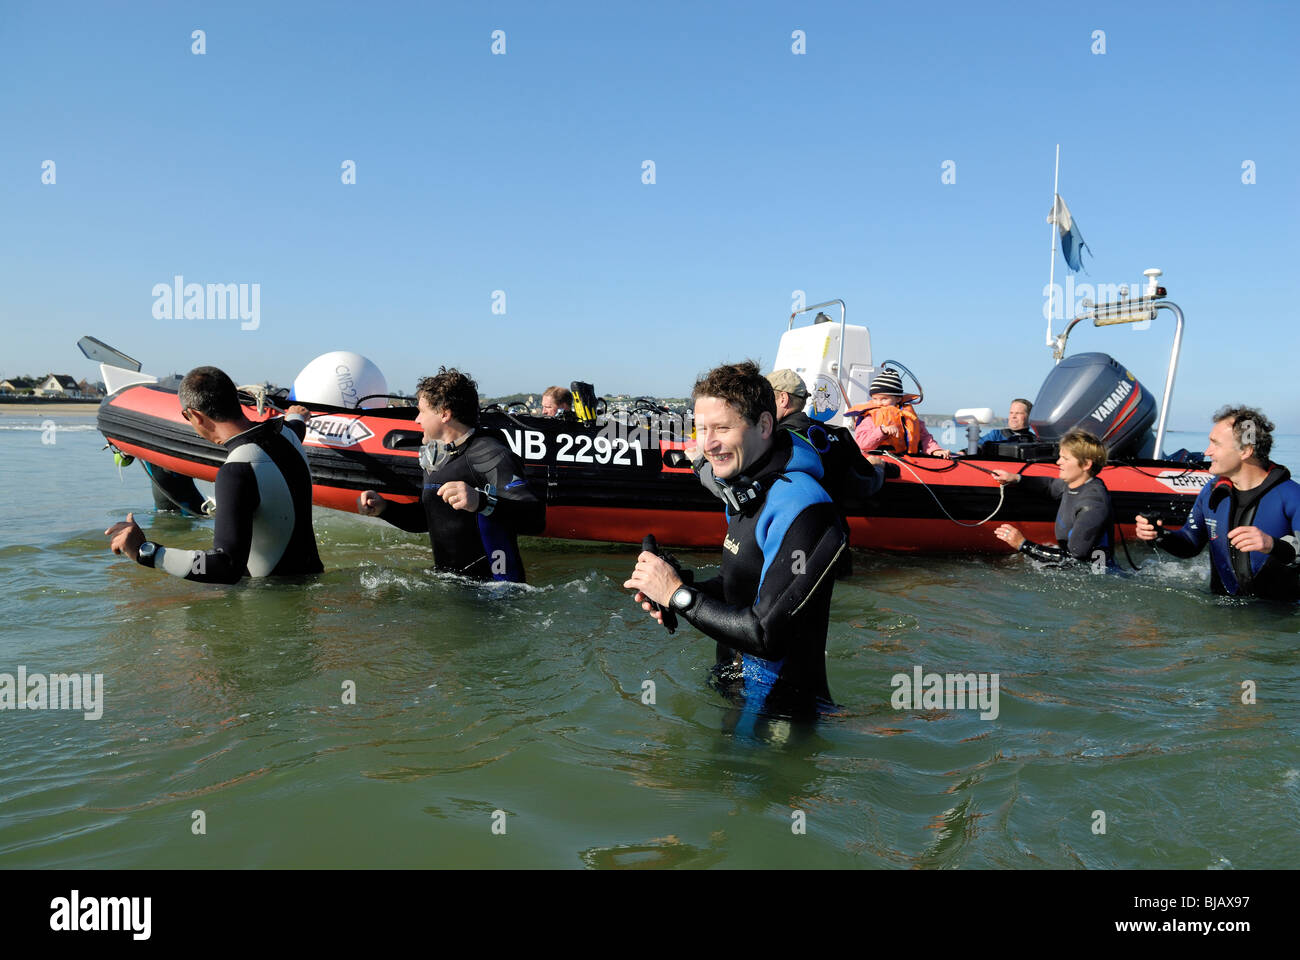 Les plongeurs sous-extraction d'un bateau de plongée gonflable, Normandie, France Banque D'Images